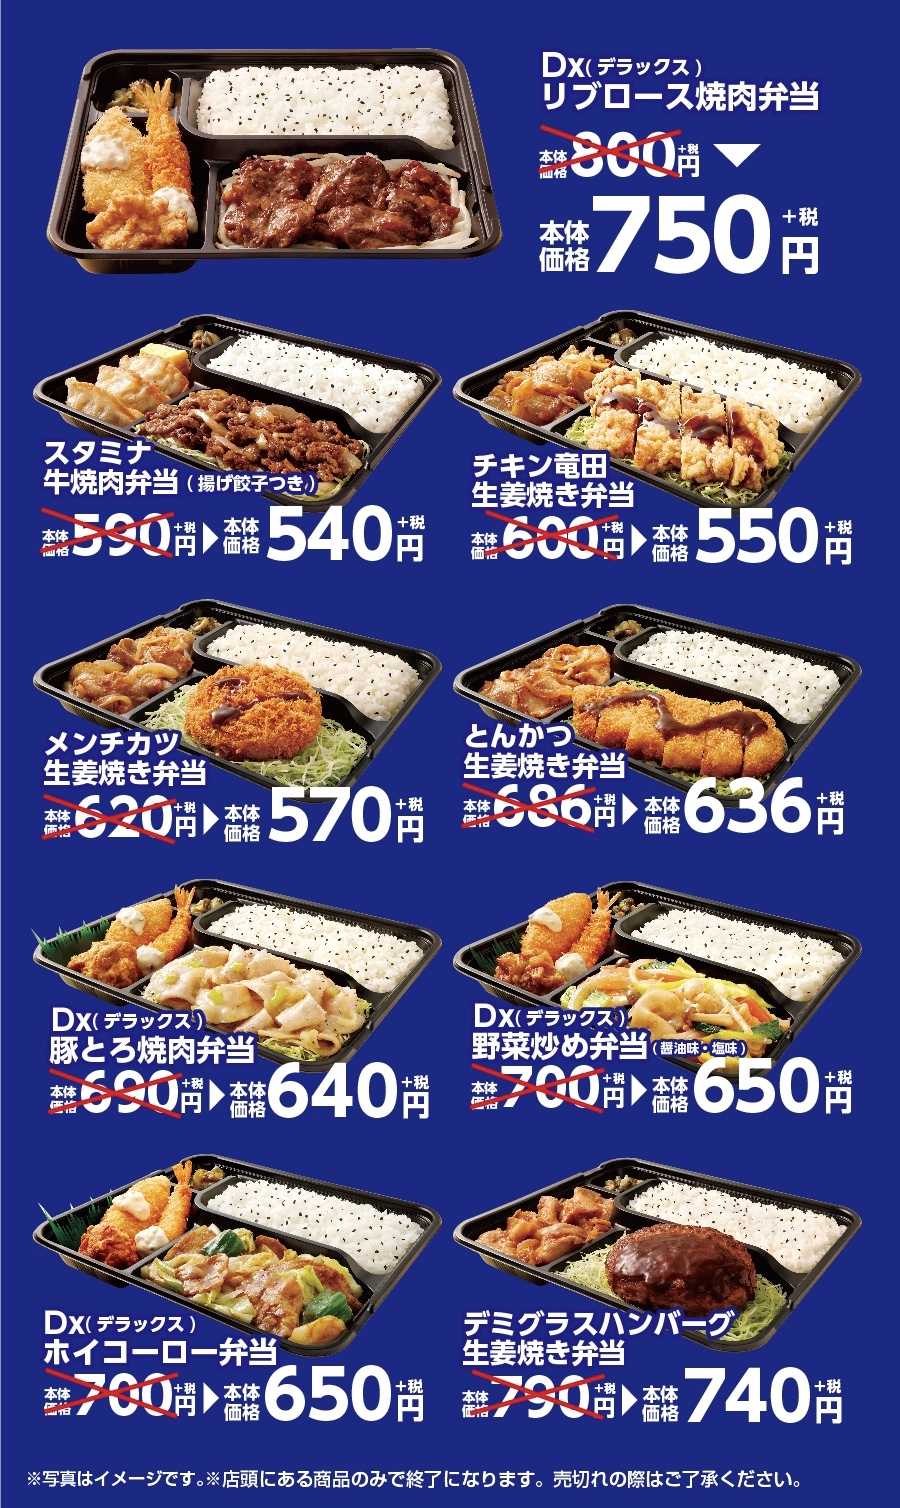 オリジン弁当 年3月25日 4月5日 夜得セールとして対象弁当が50円引き ファストランチボックス